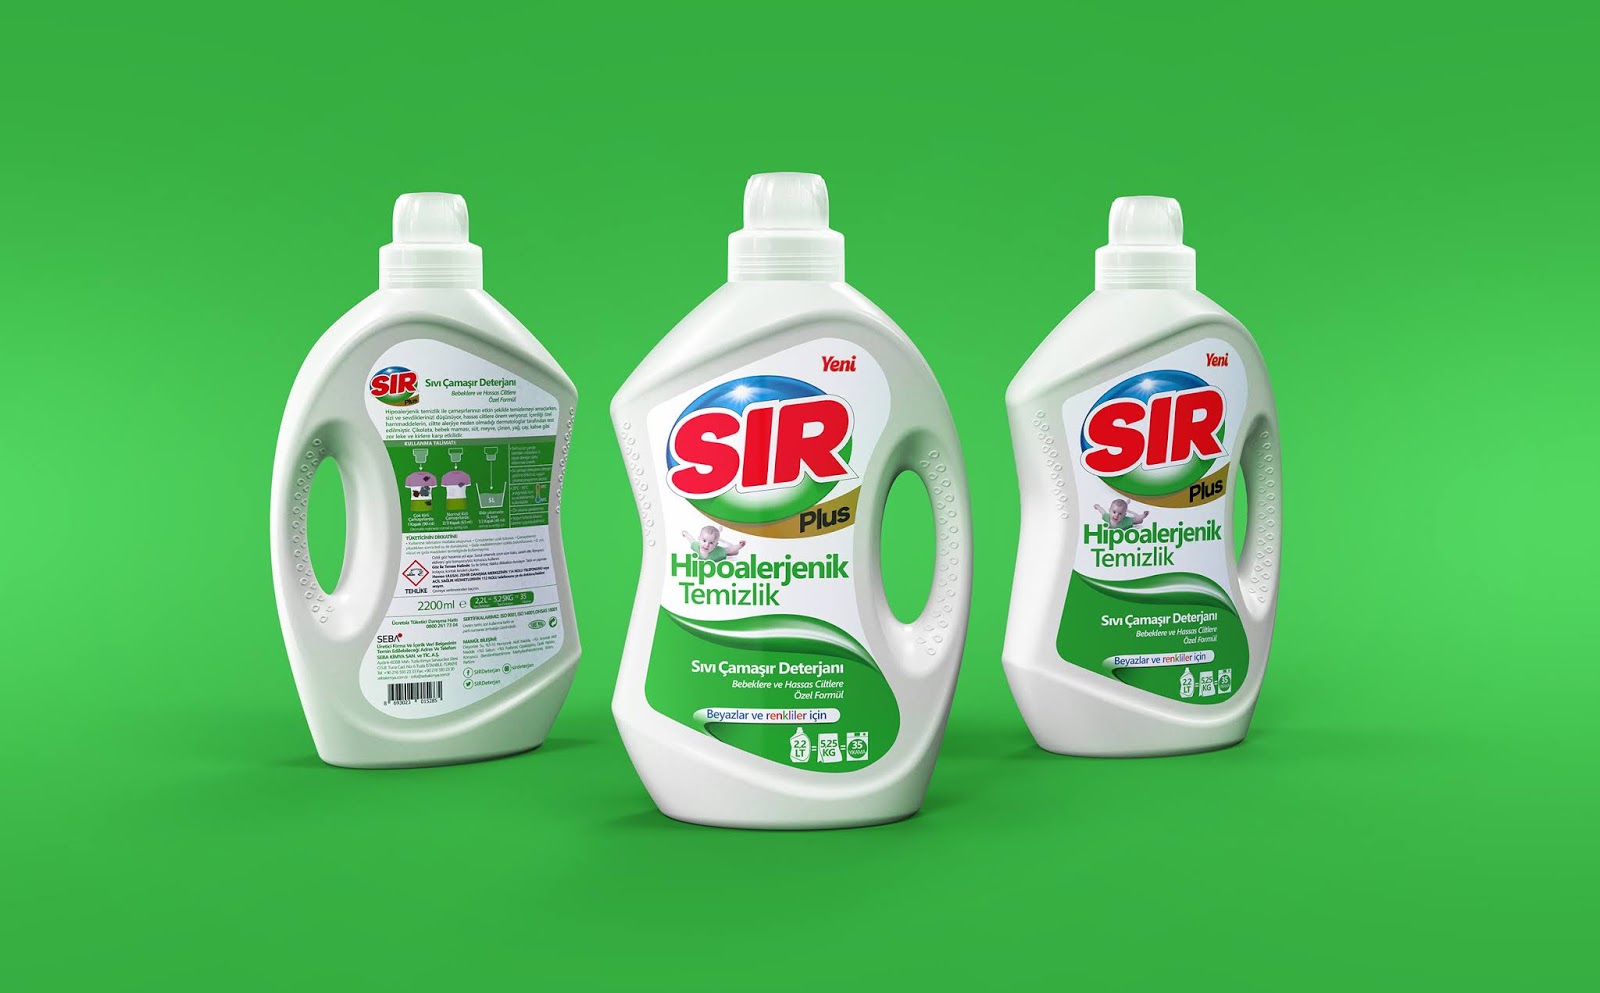 SIR Liquid Laundry Detergent.